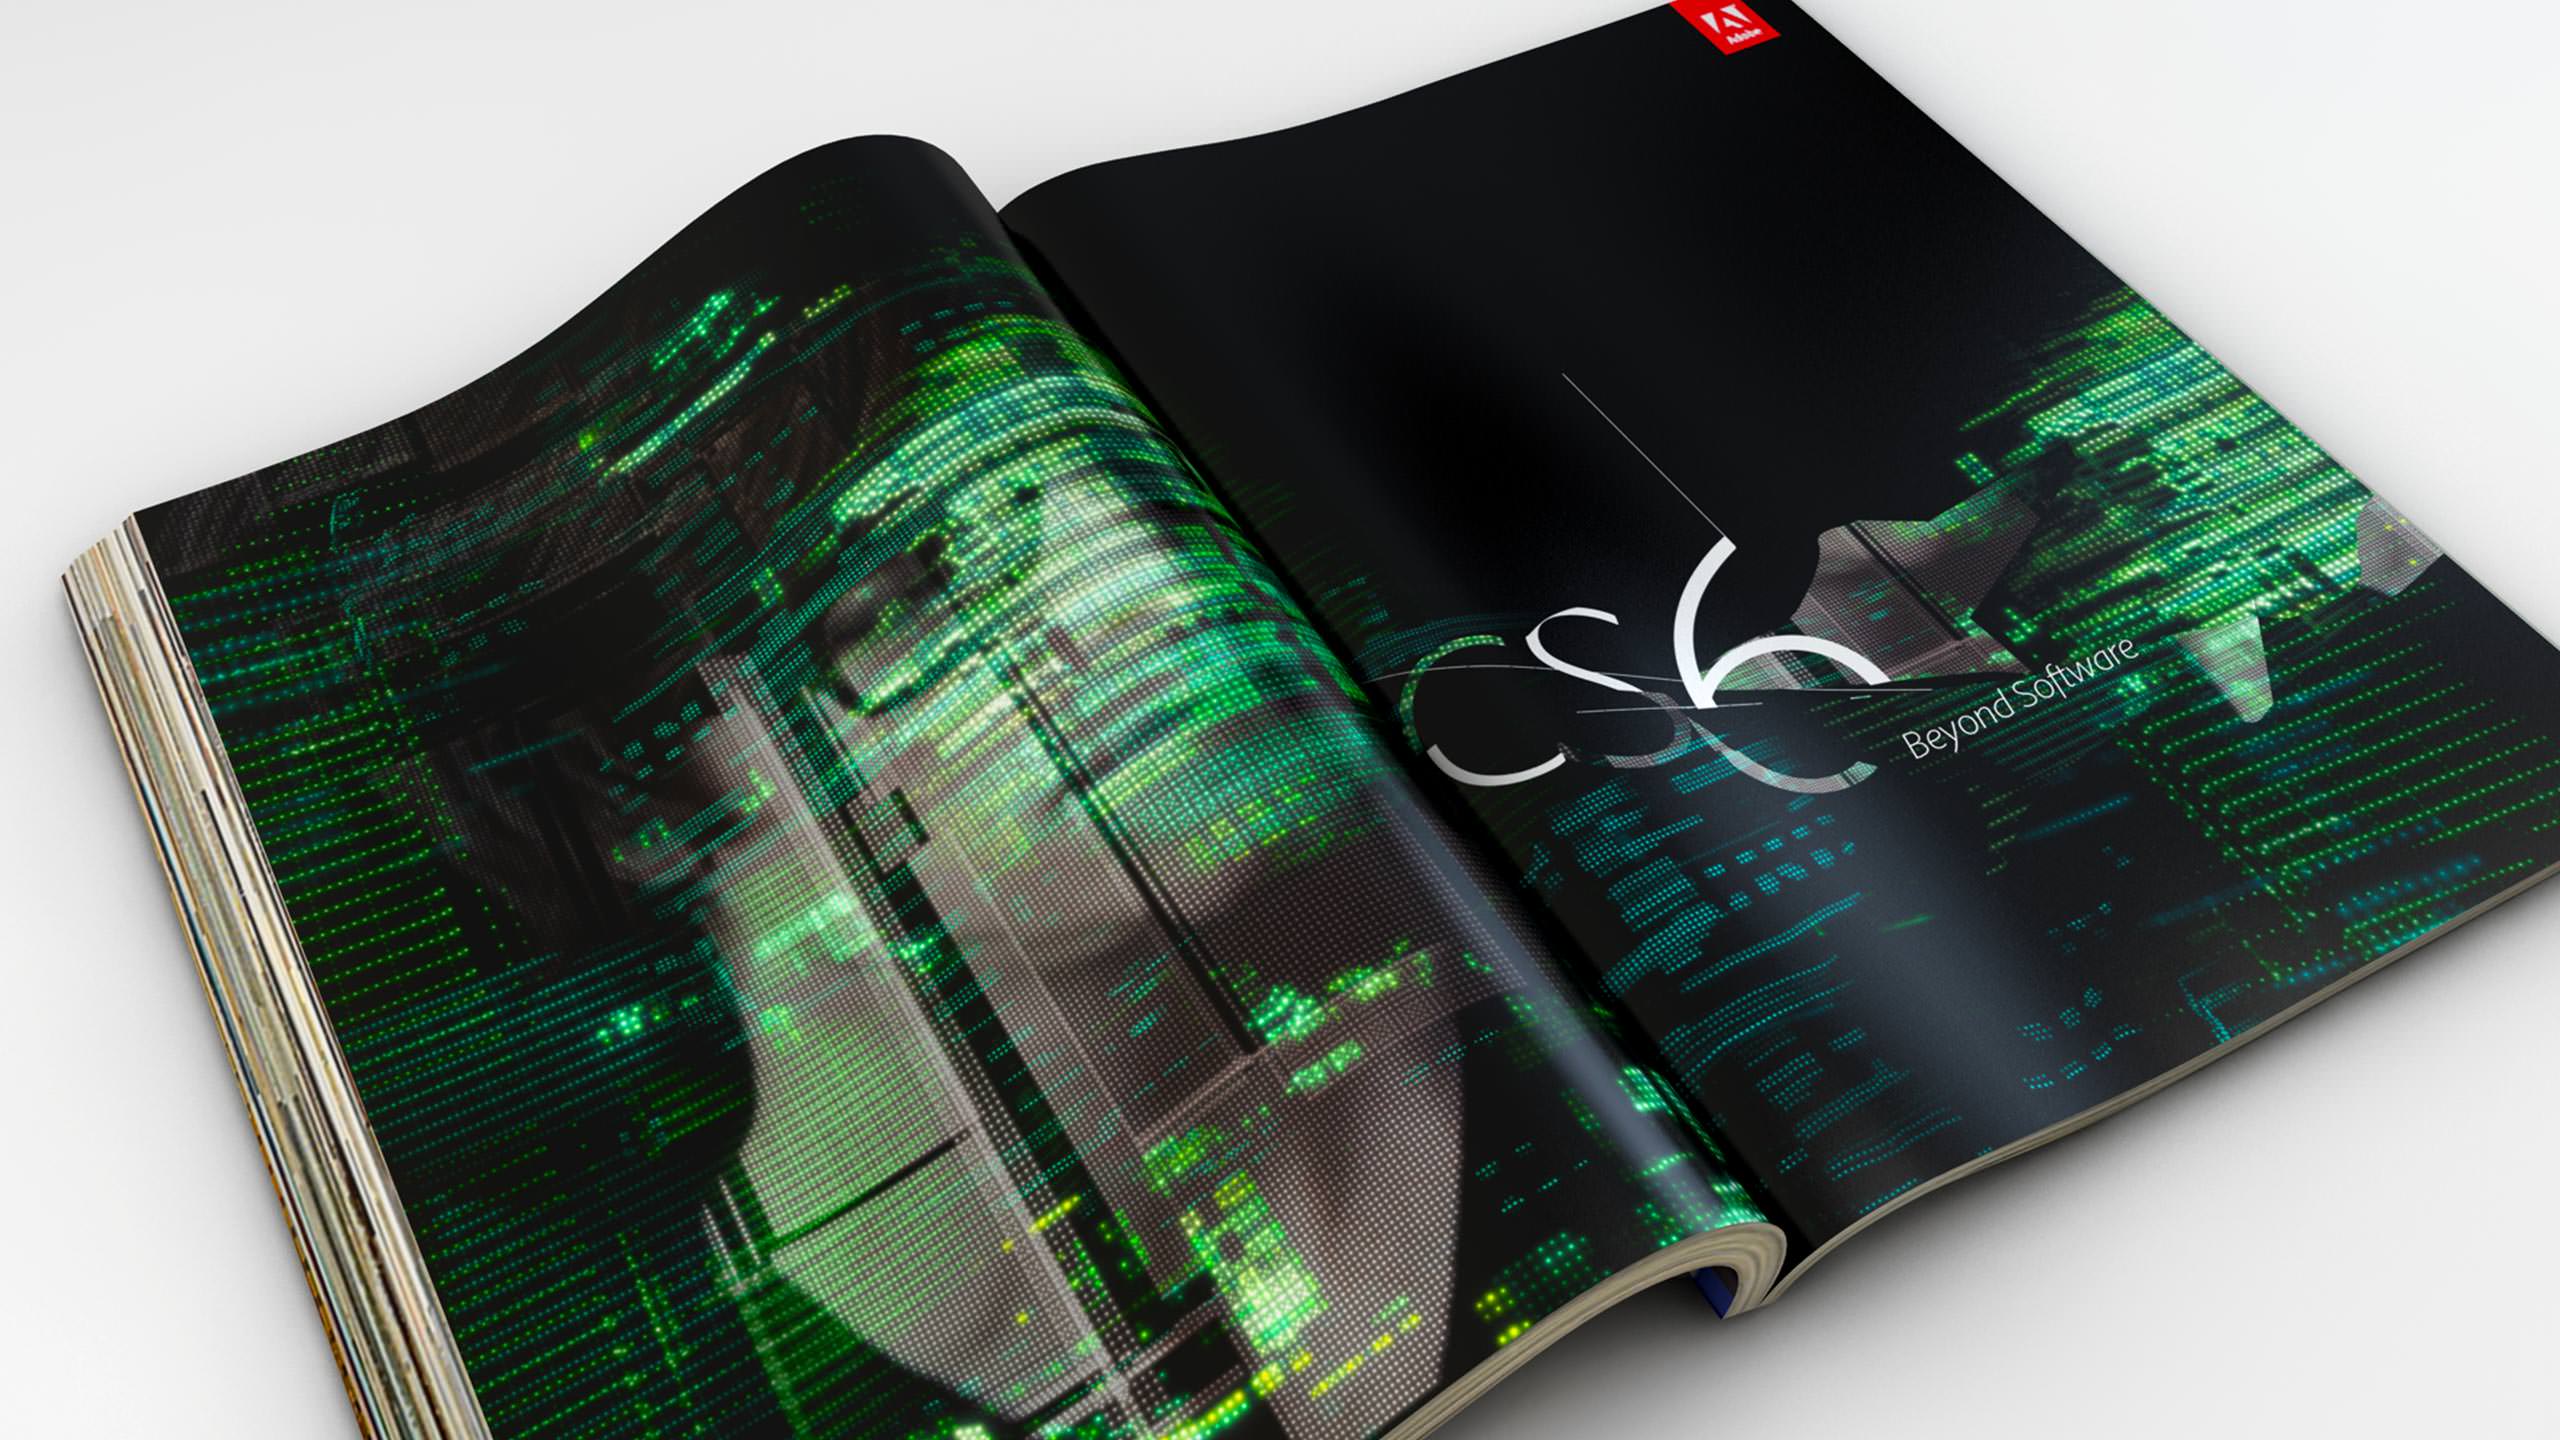 Adobe CS6 Dreamweaver campaign in application of magazine spread